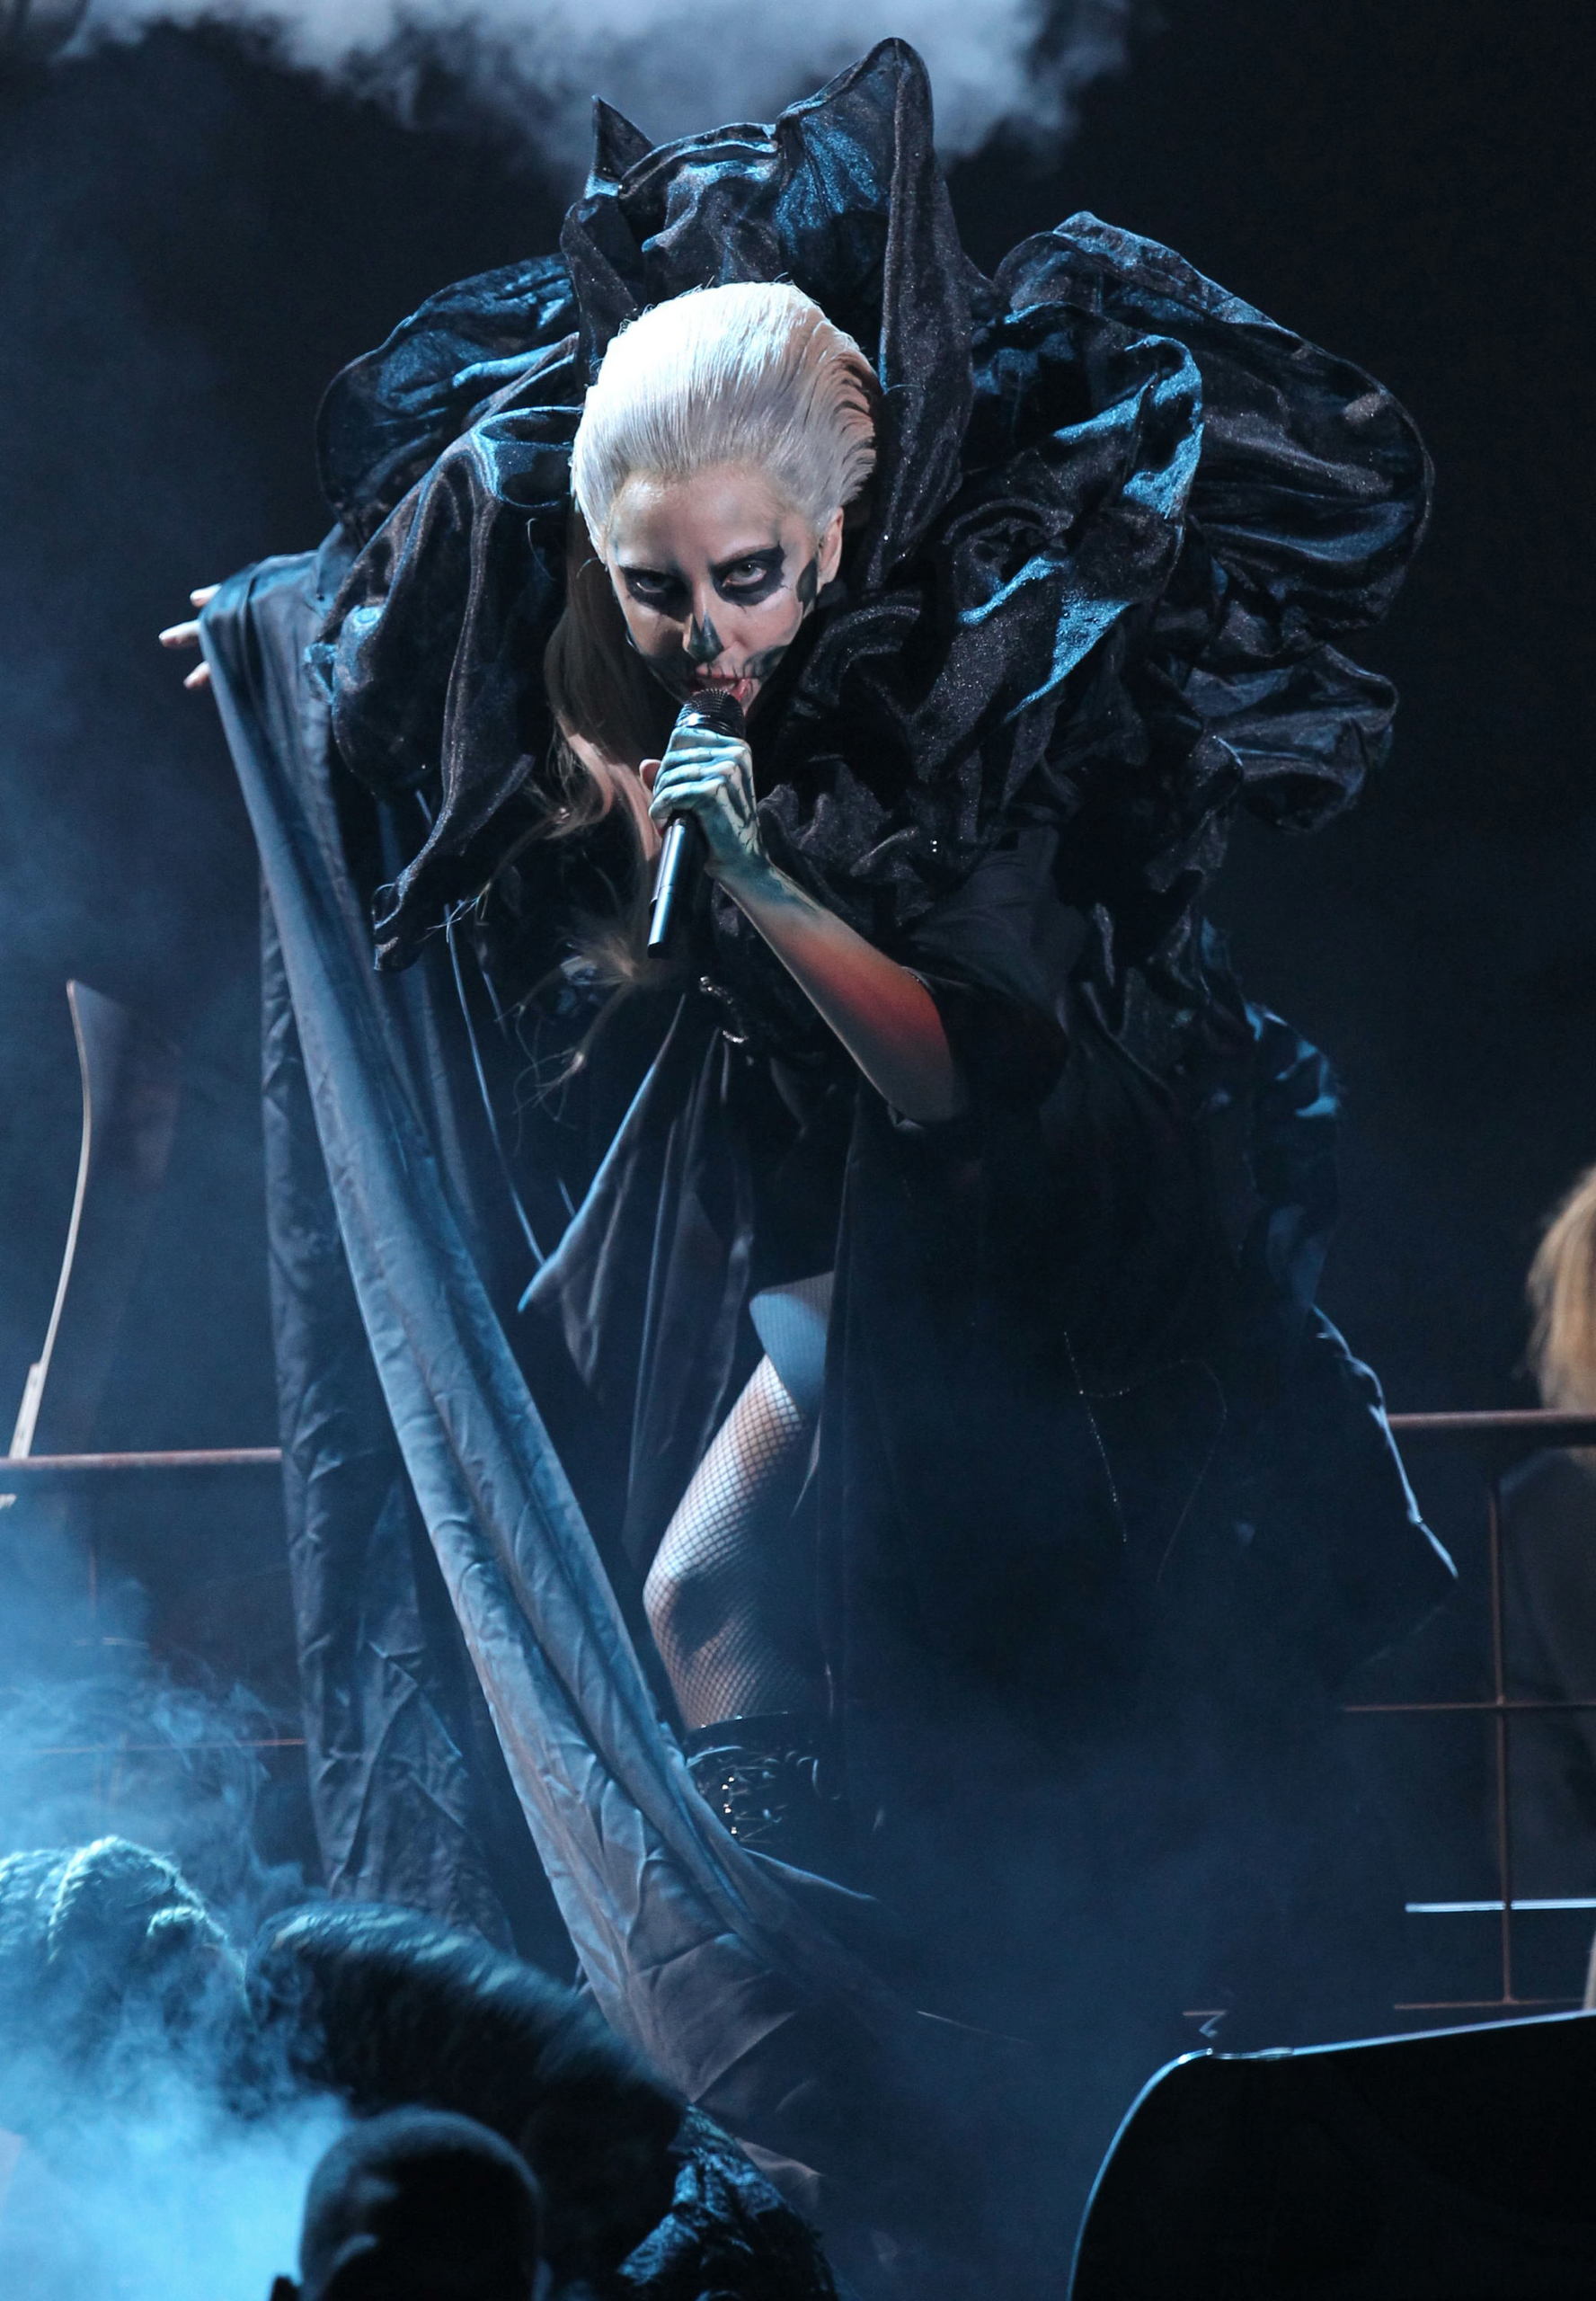 Lady Gaga performing live at Grammys Nominations Concert - Lady Gaga ...